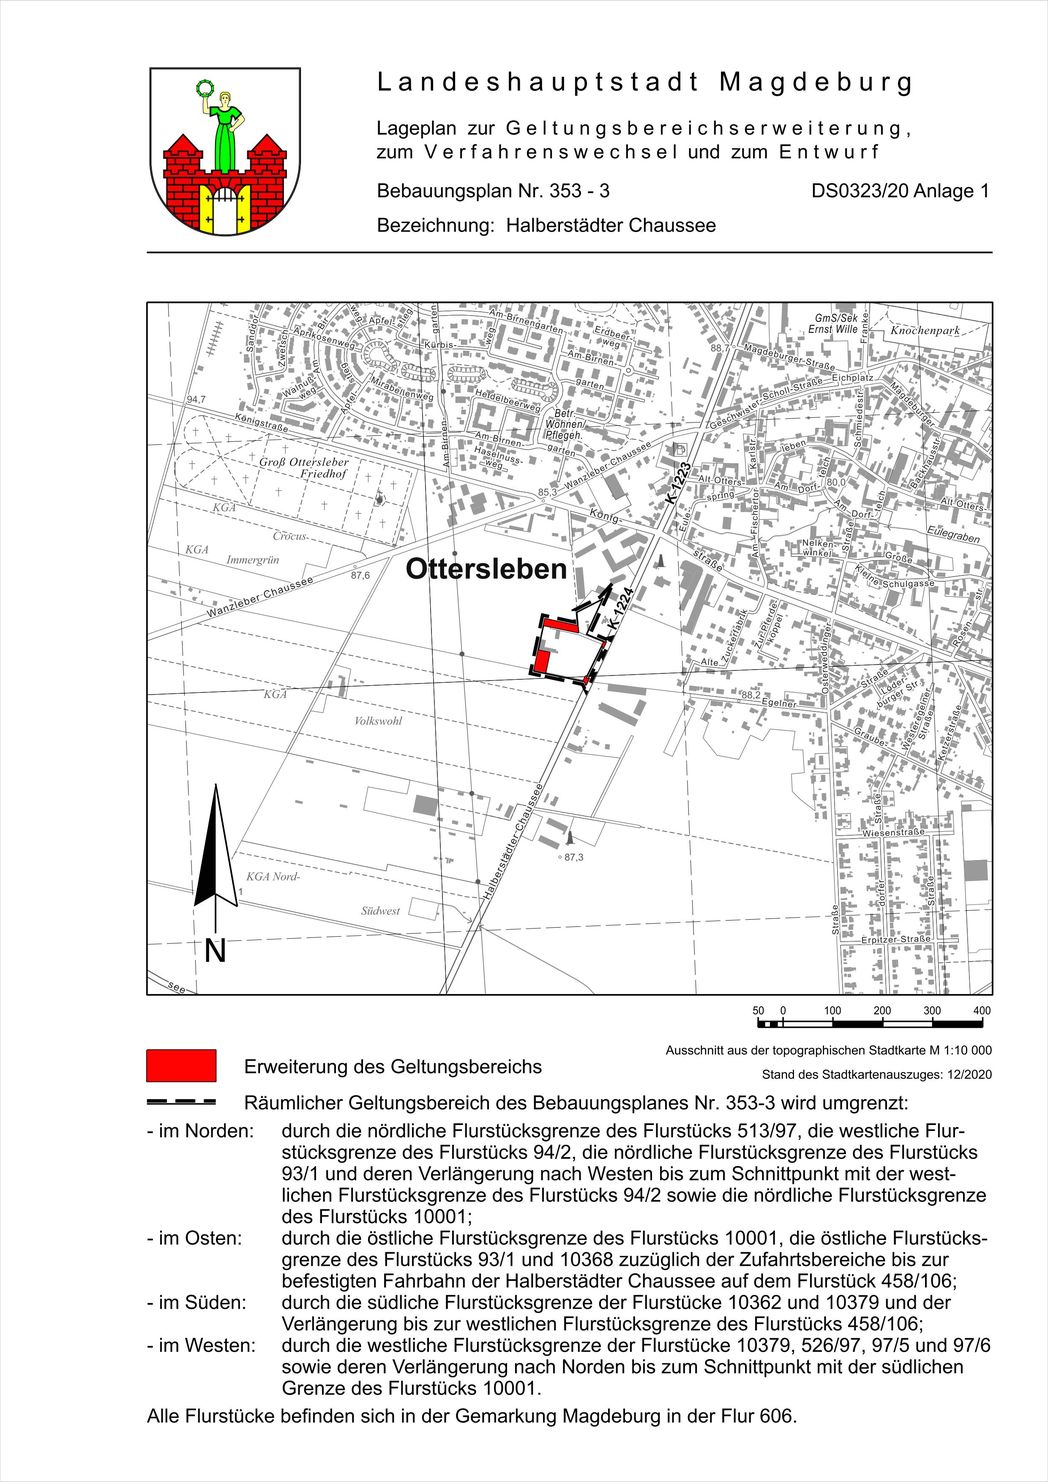 Bild vergrößern: Lage zum Bebauungsplan Nr. 353-3 "Halberstädter Chaussee"